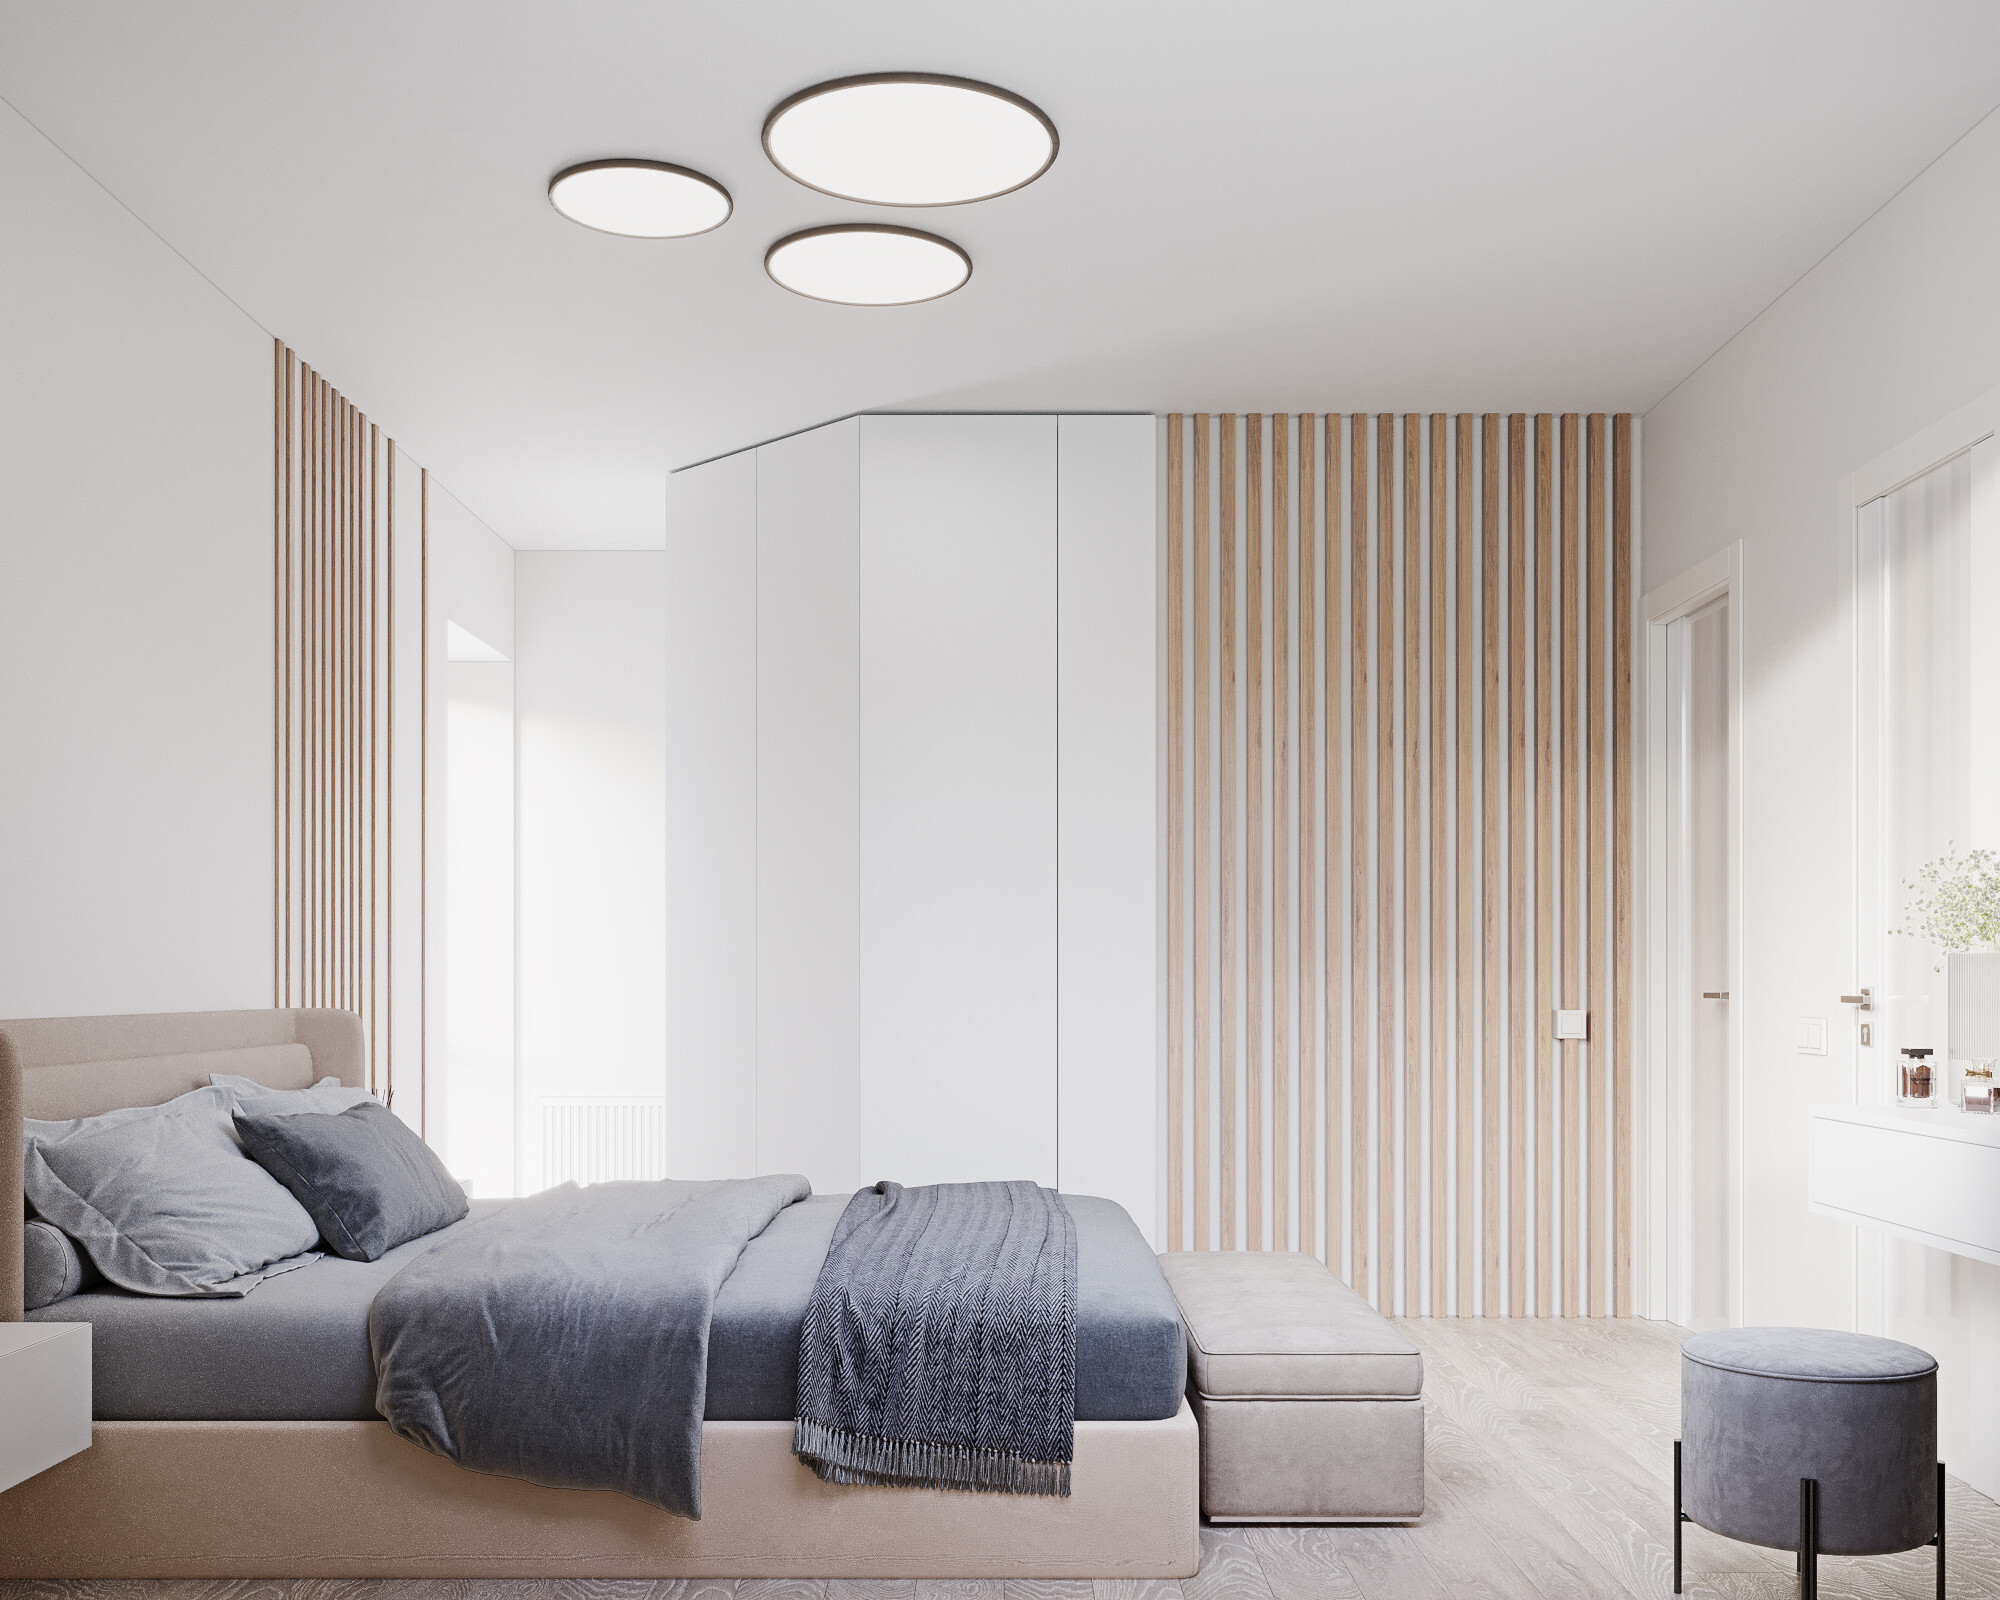 Интерьер спальни cветовыми линиями, рейками с подсветкой, подсветкой светодиодной и светильниками над кроватью в современном стиле